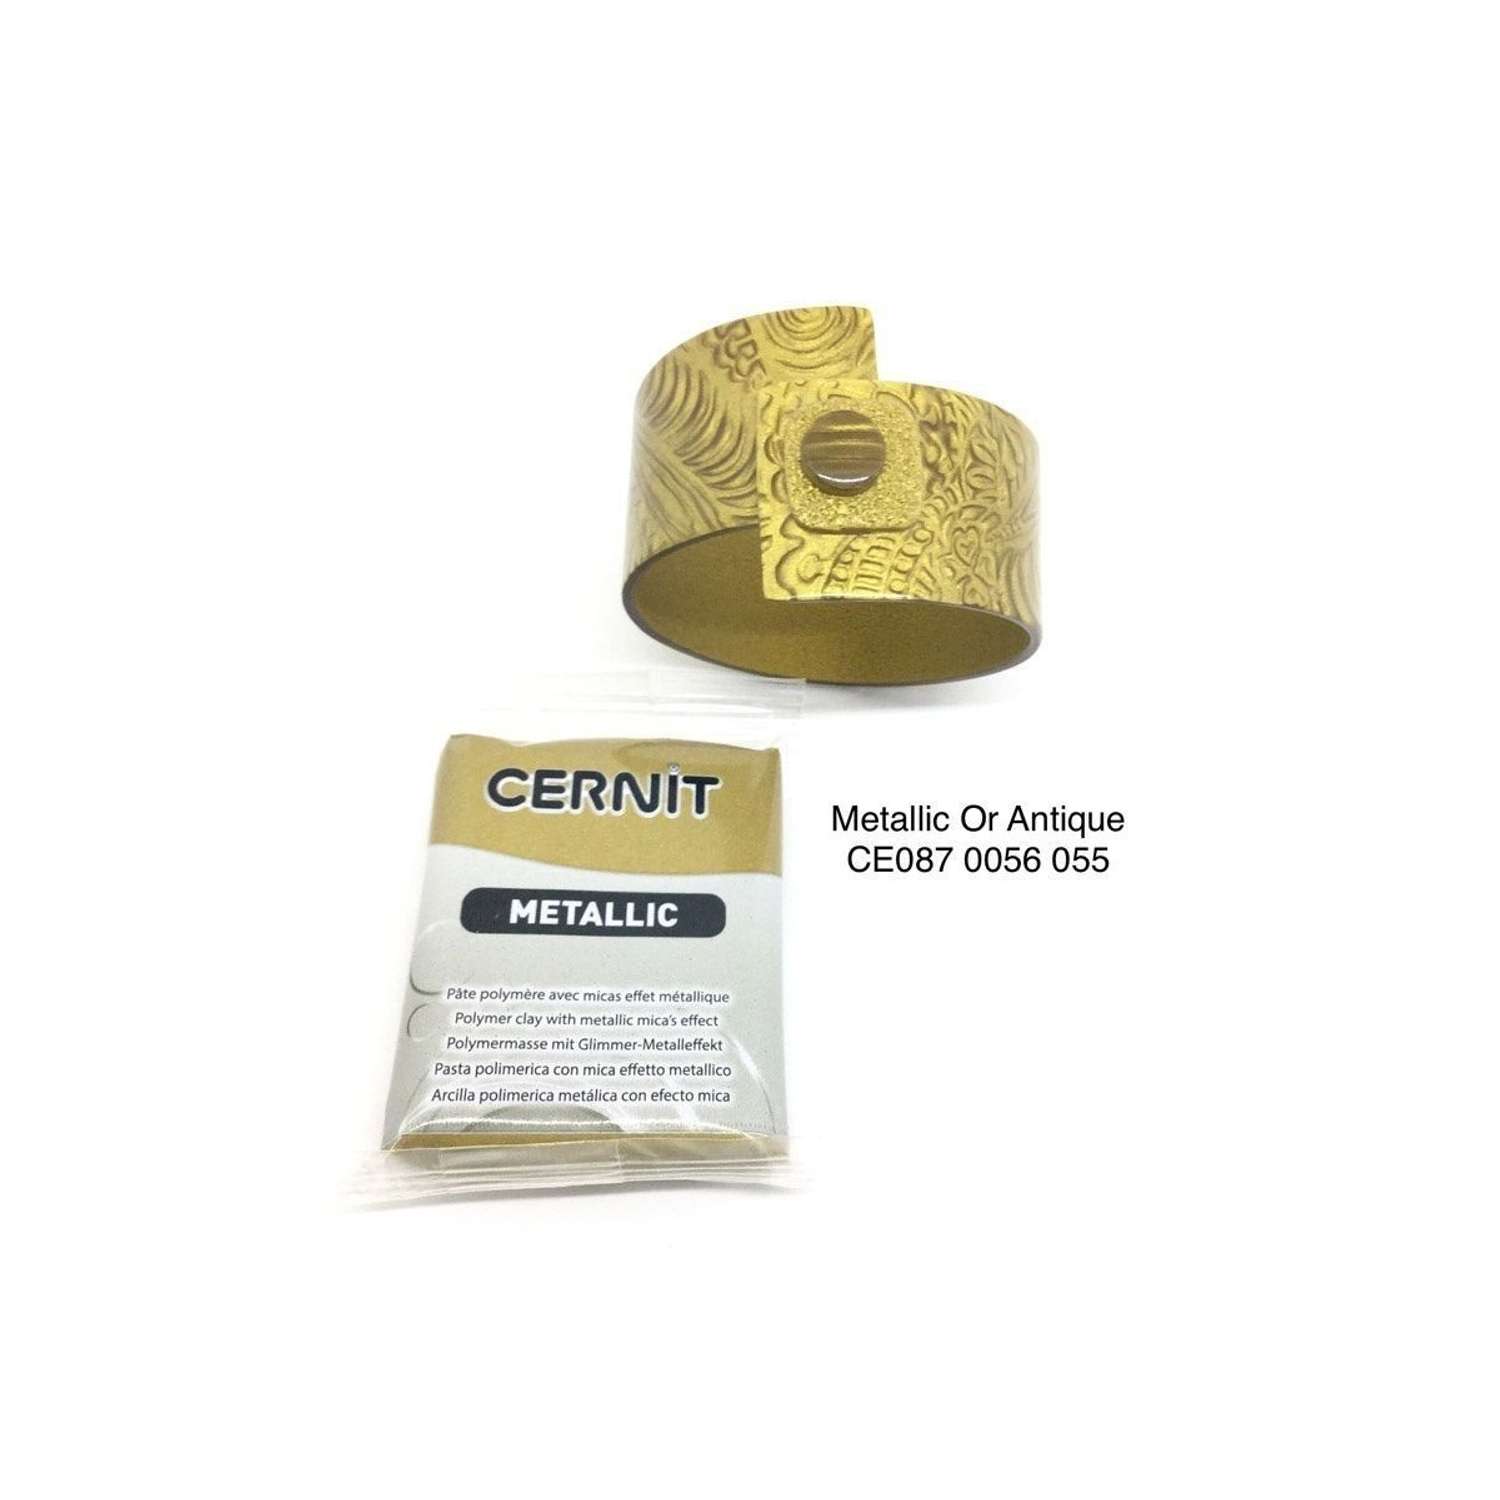 Полимерная глина Cernit пластика запекаемая Цернит metallic 56 гр CE0870062 - фото 10